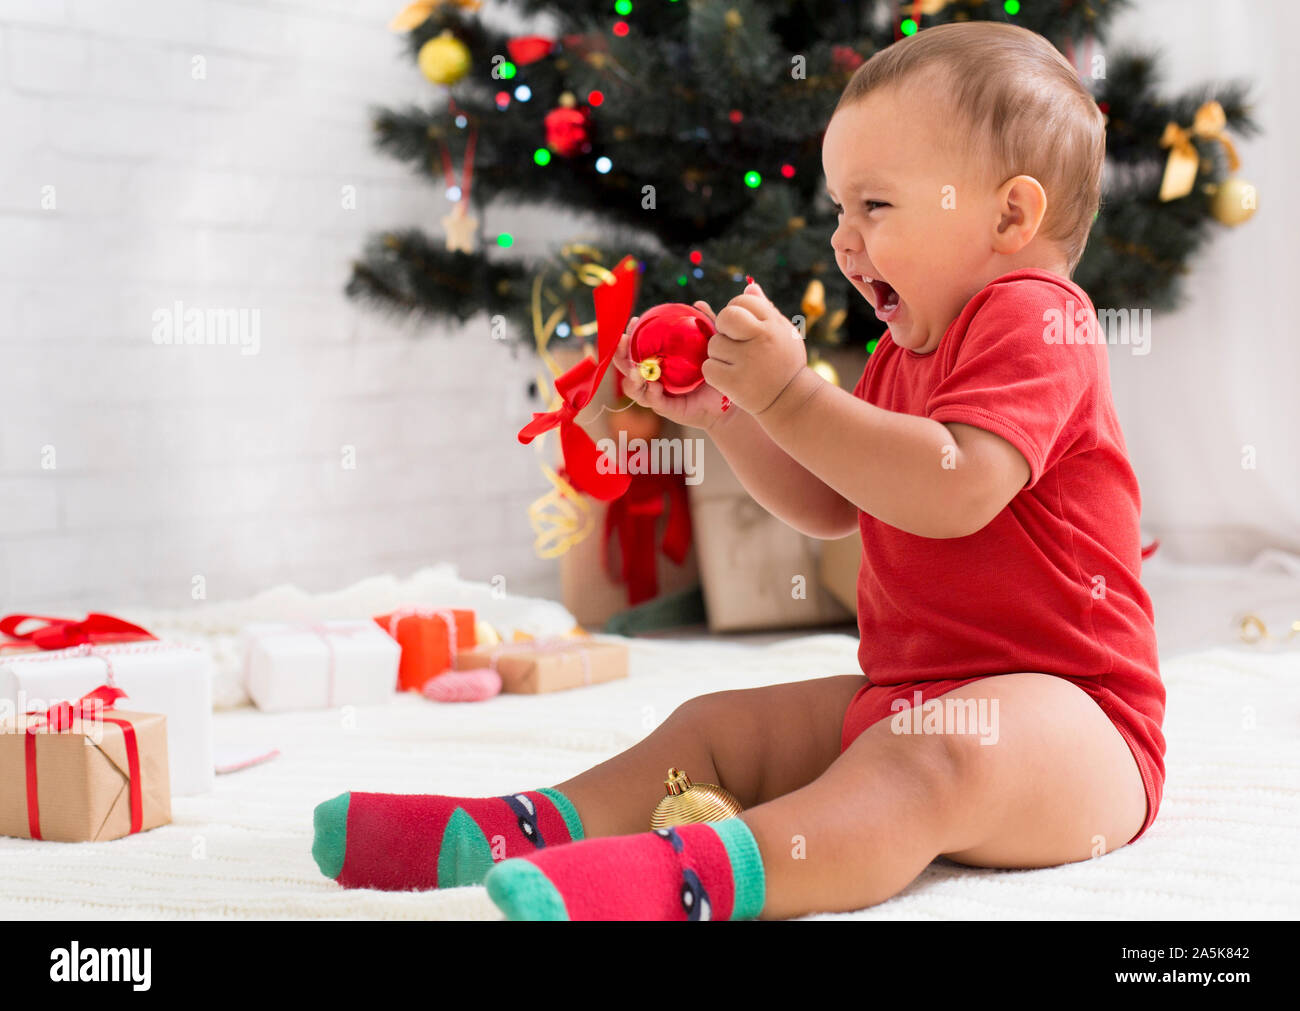 Wütend emotionale Baby schreien, Sitzung mit Dekorationen in der Nähe von Weihnachten Baum Stockfoto